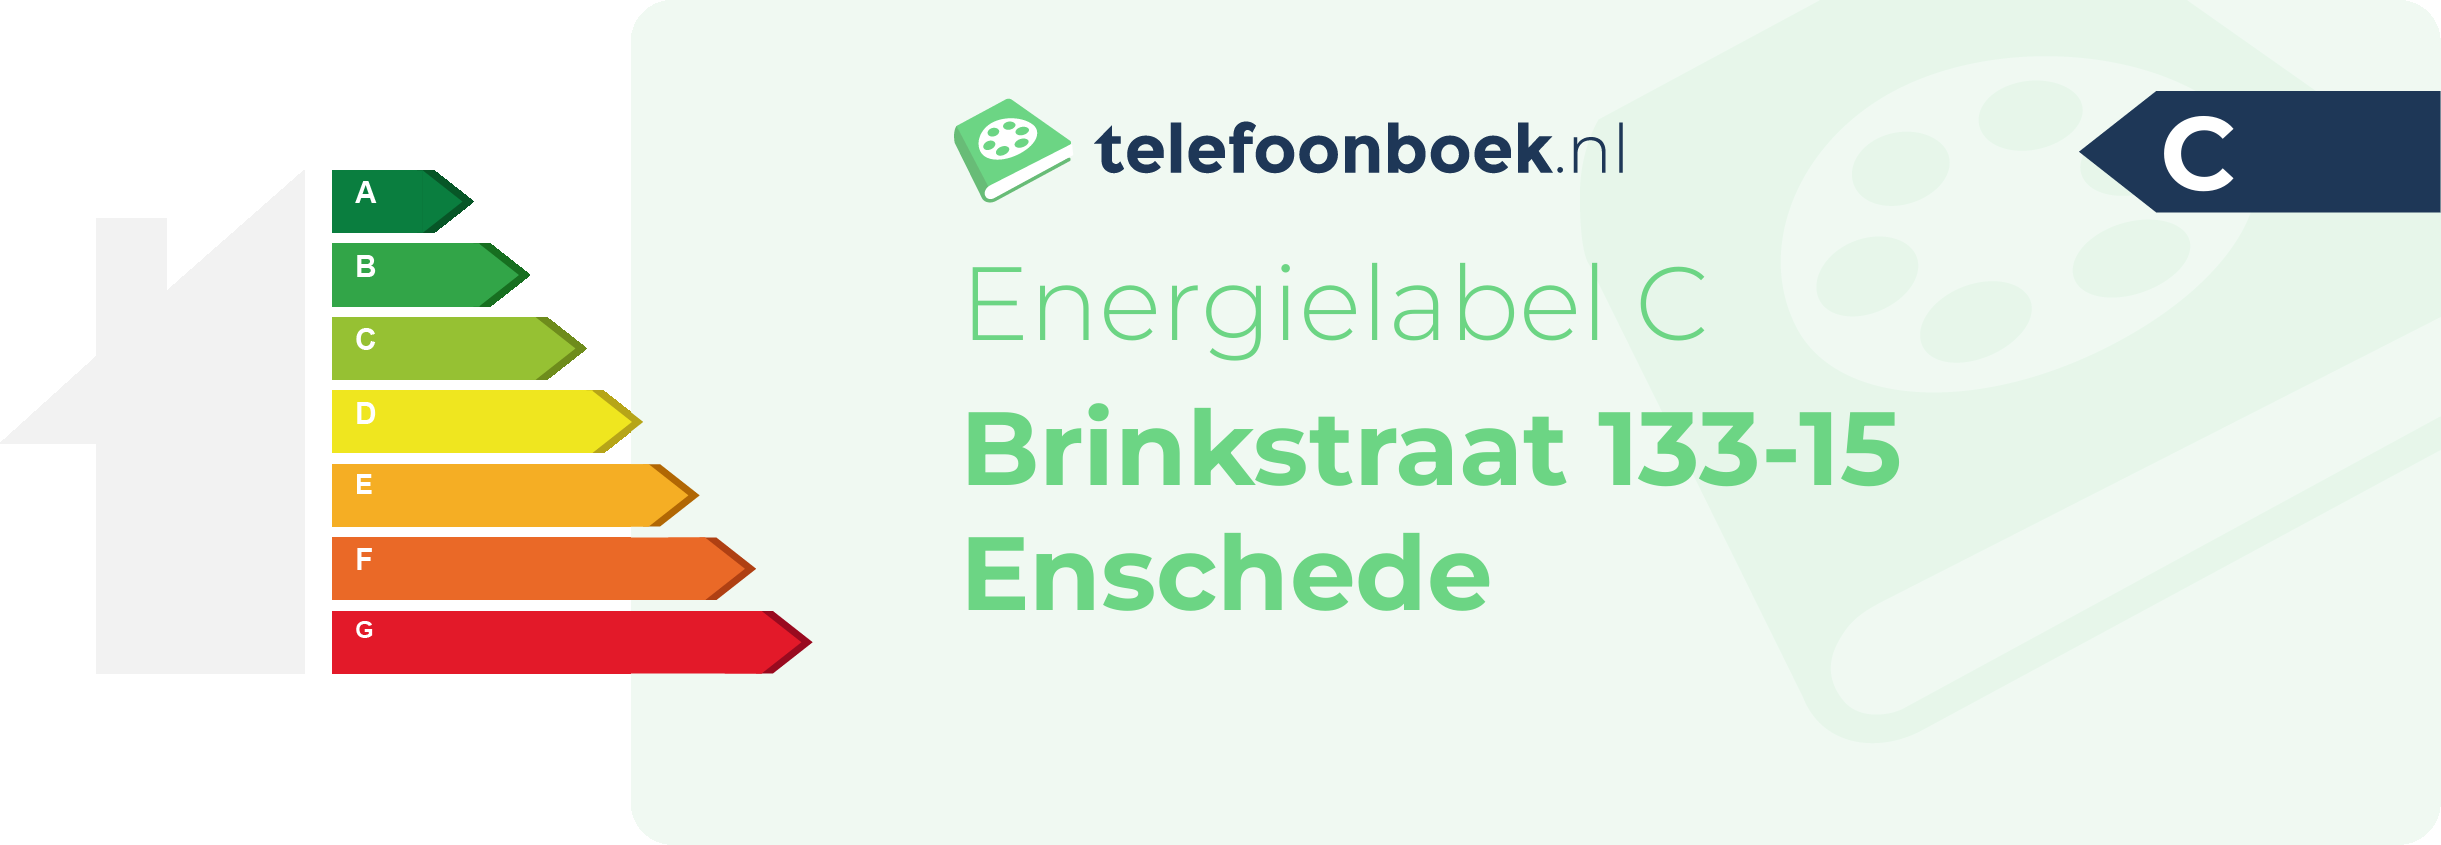 Energielabel Brinkstraat 133-15 Enschede